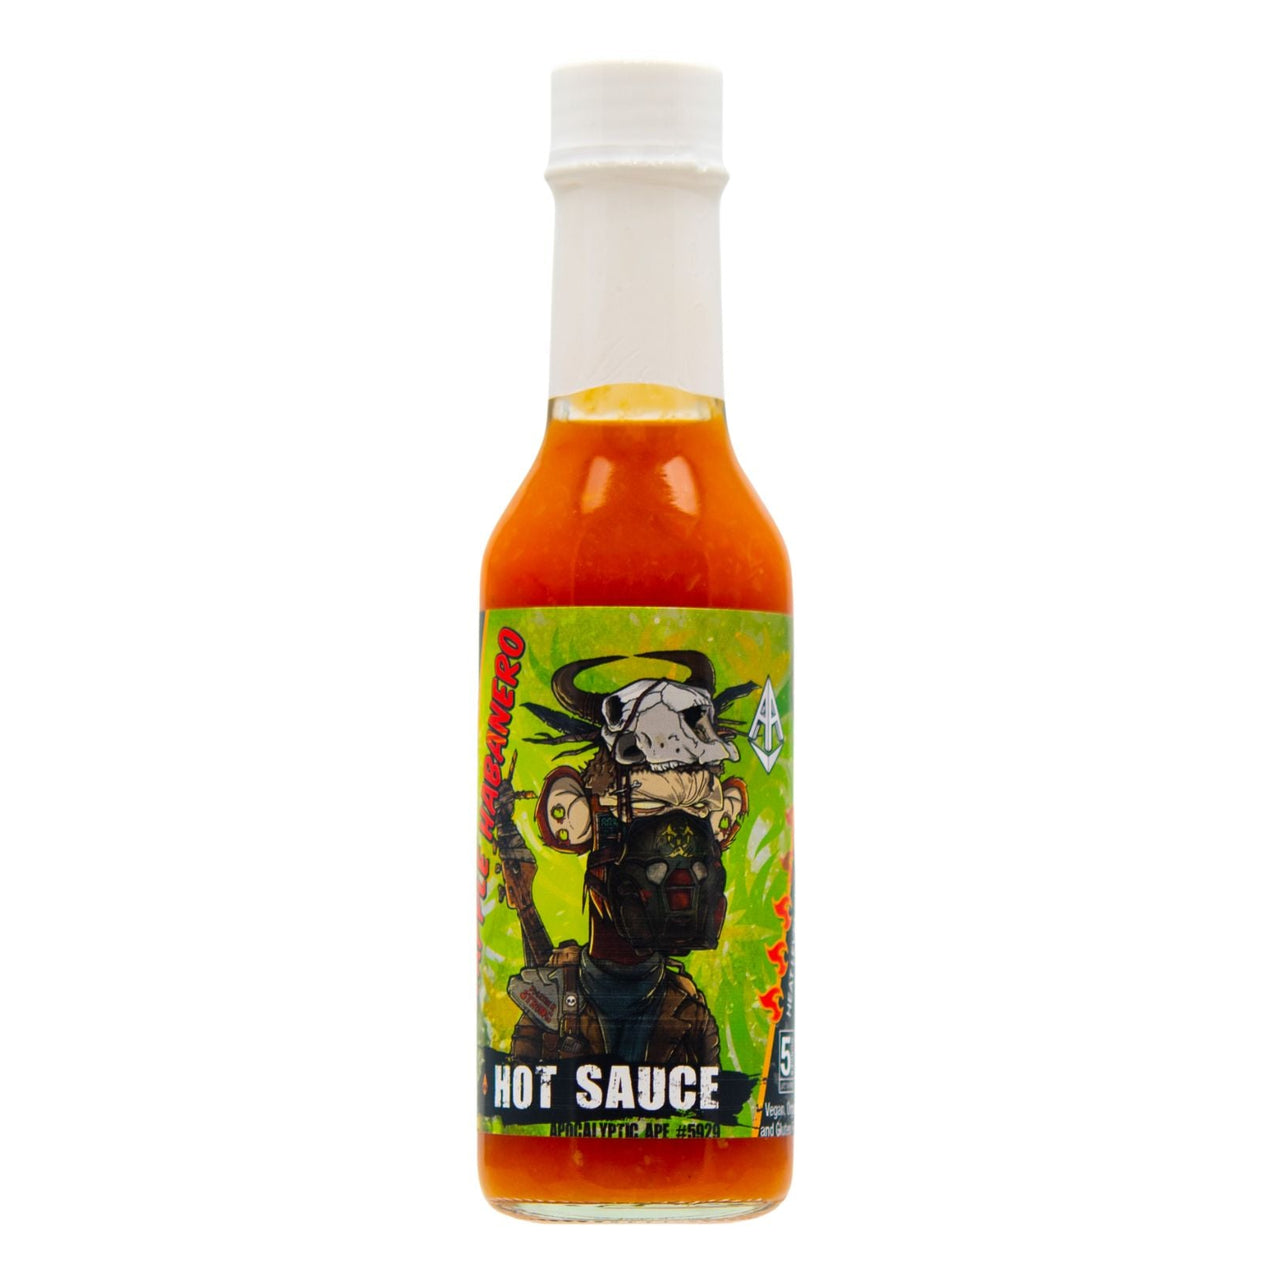 Apocalyptic Ape #5929 Pineapple Habanero Hot Sauce